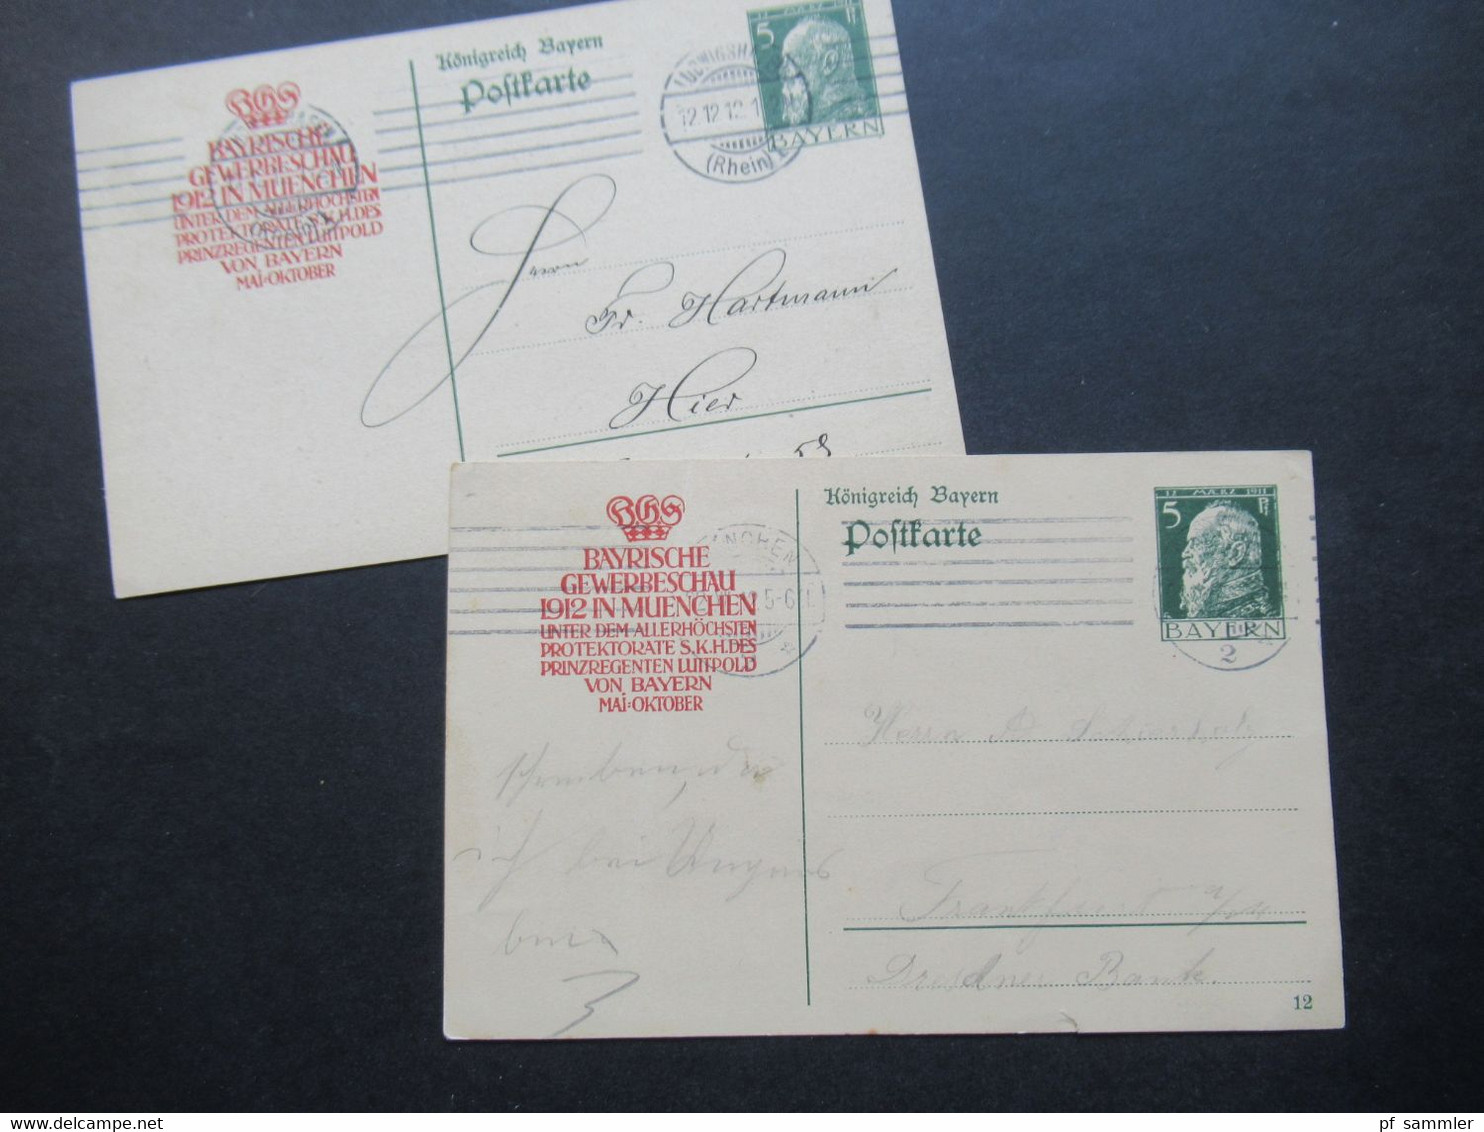 AD Bayern 1912 Postkarte / Ganzsache Mit Zudruck Bayrische Gewerbeschau 1912 In Muenchen Unter Protektorate Luitpold - Postwaardestukken